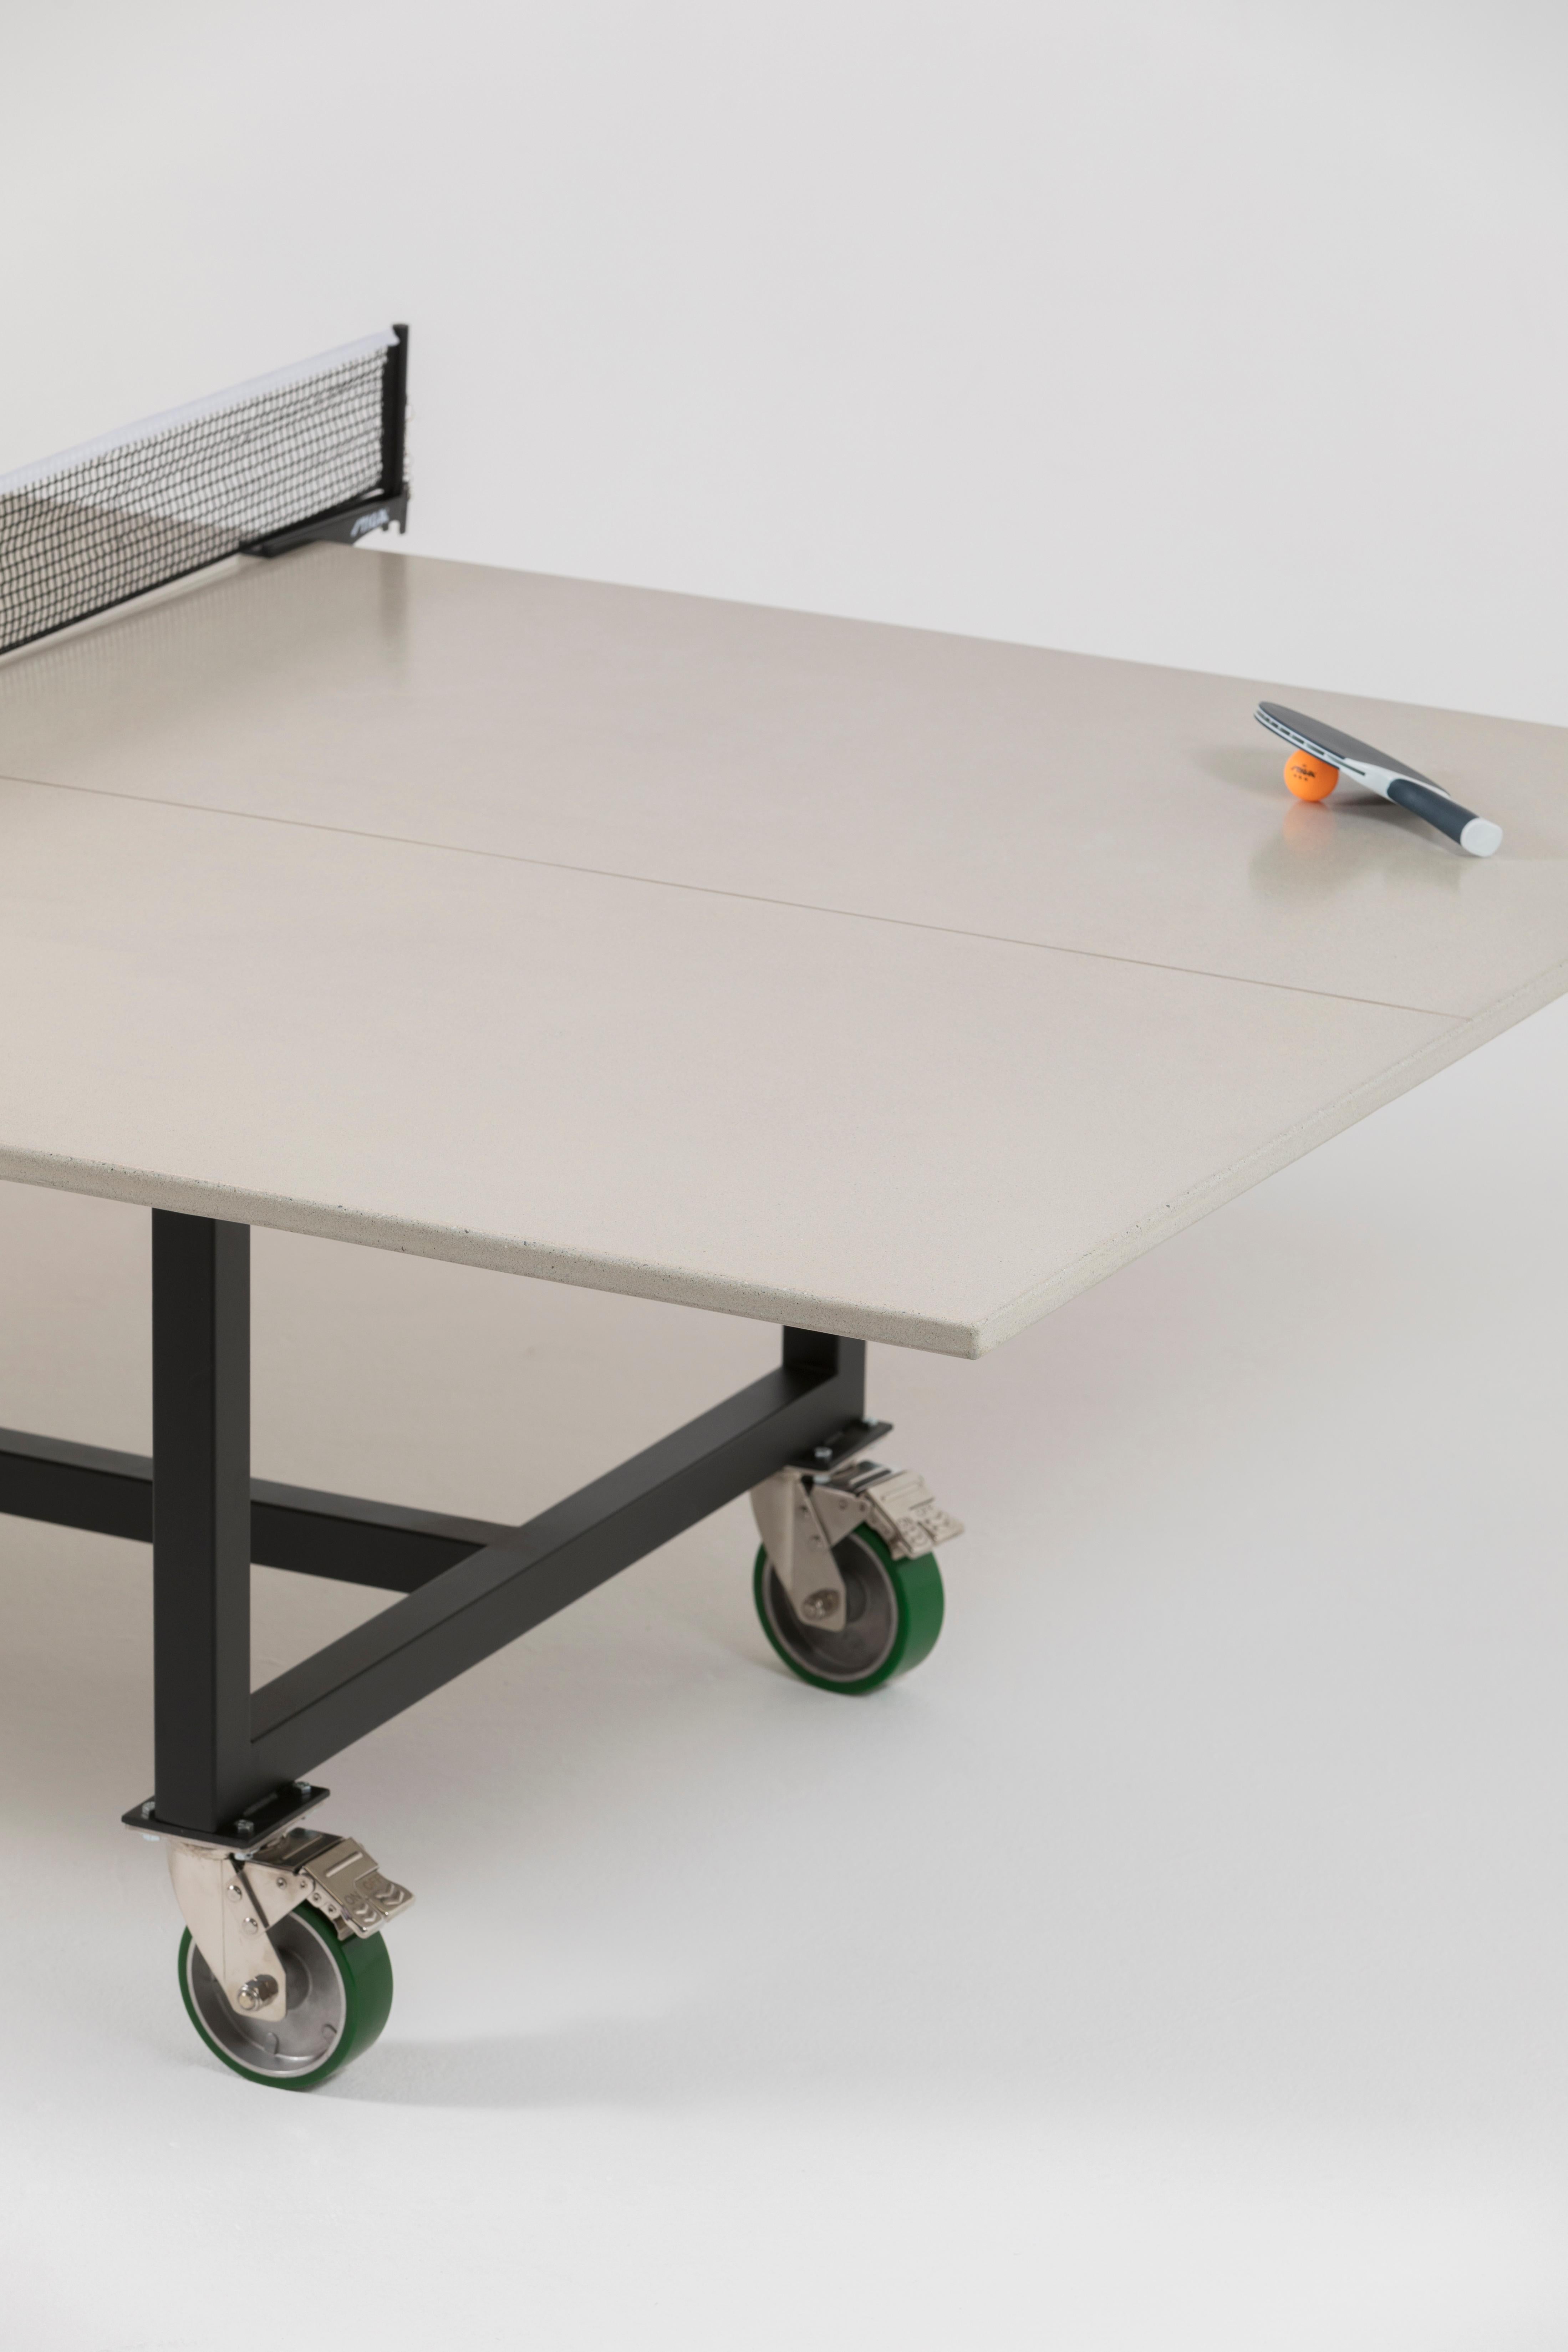 Bauhaus James de Wulf Concrete Rolling Ping Pong Table - Standard Colors For Sale